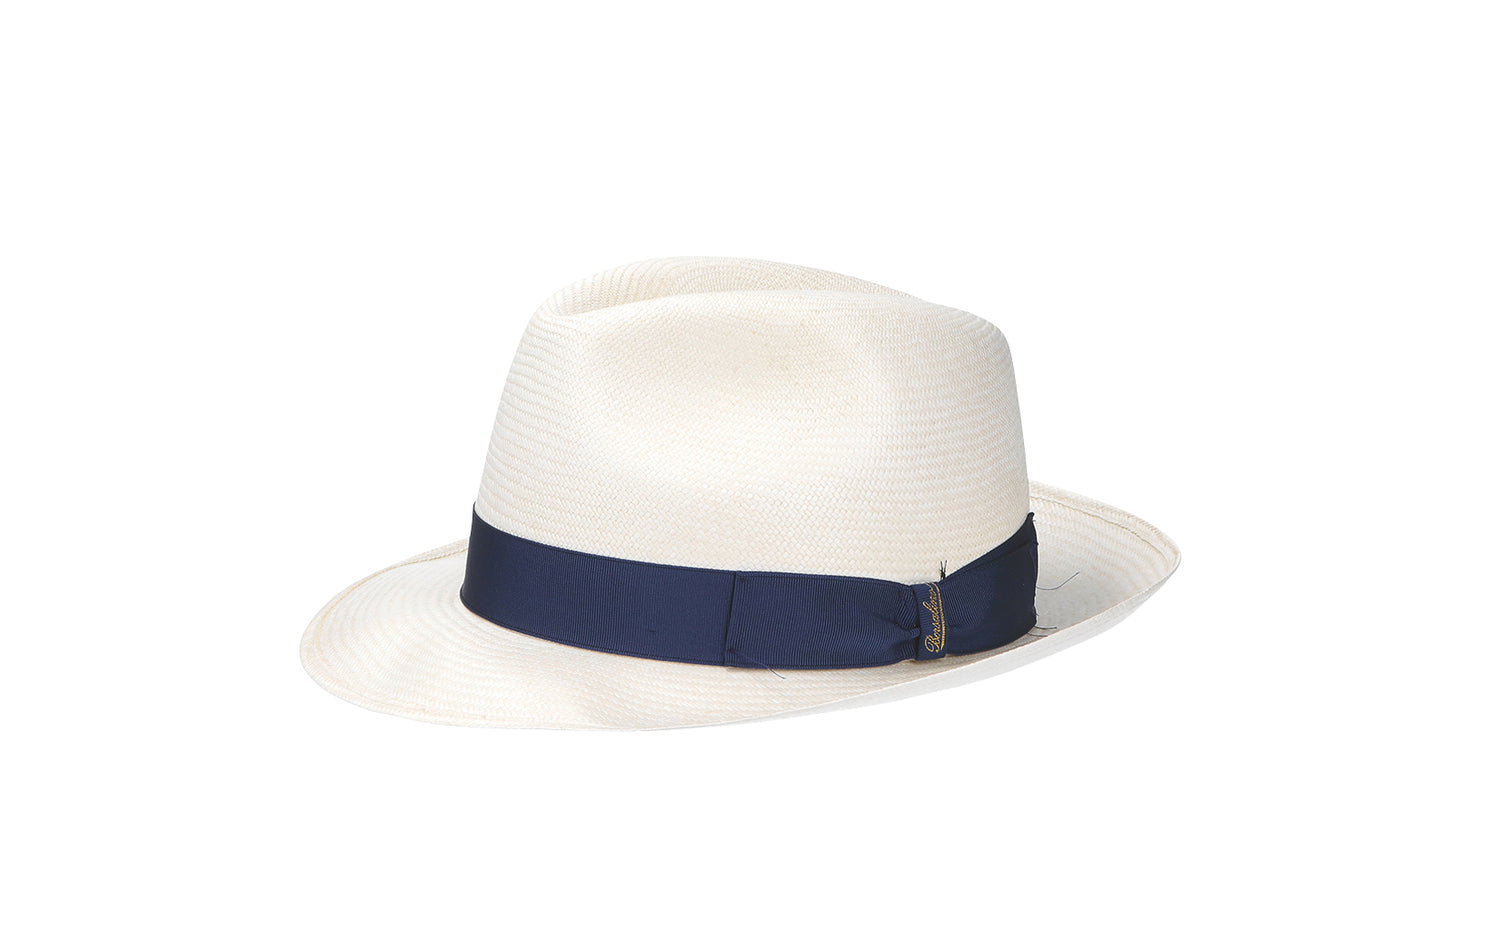 40代におすすめのメンズ帽子ブランド 紳士の帽子の選び方 ハットスタイル